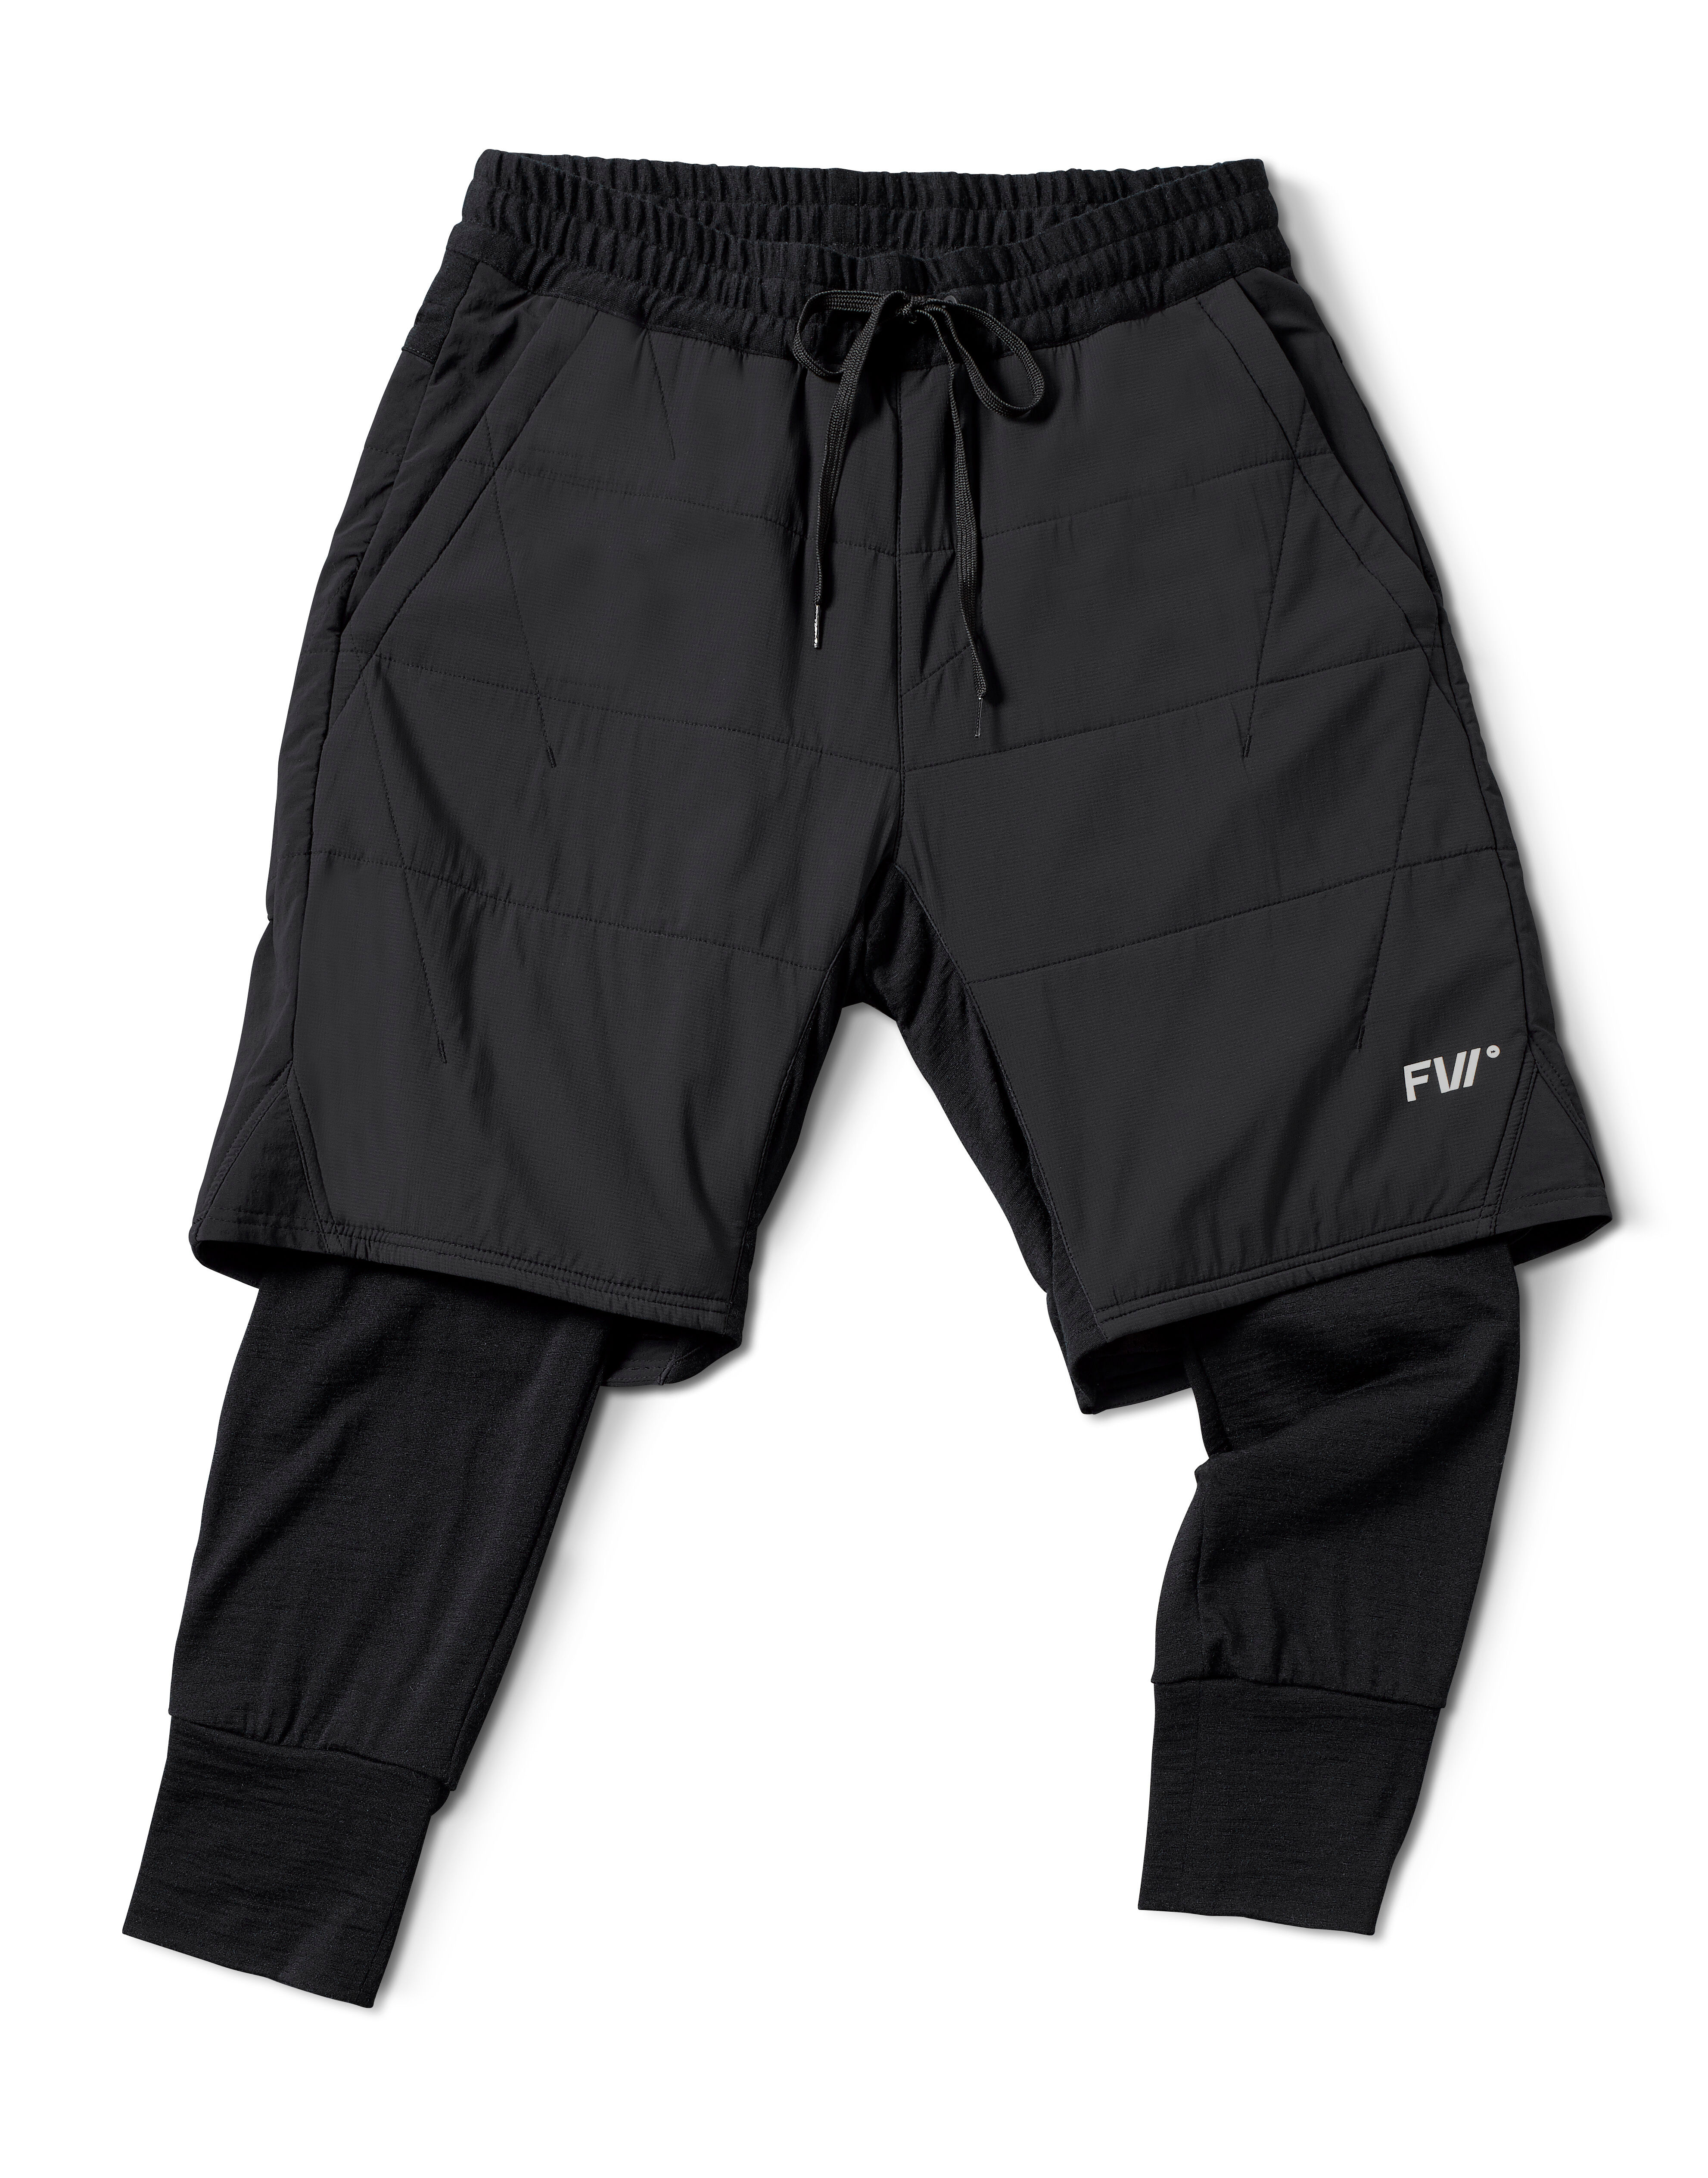 FW Apparel Manifest Hybrid Tour Pant - Pantalón de esquí - Hombre